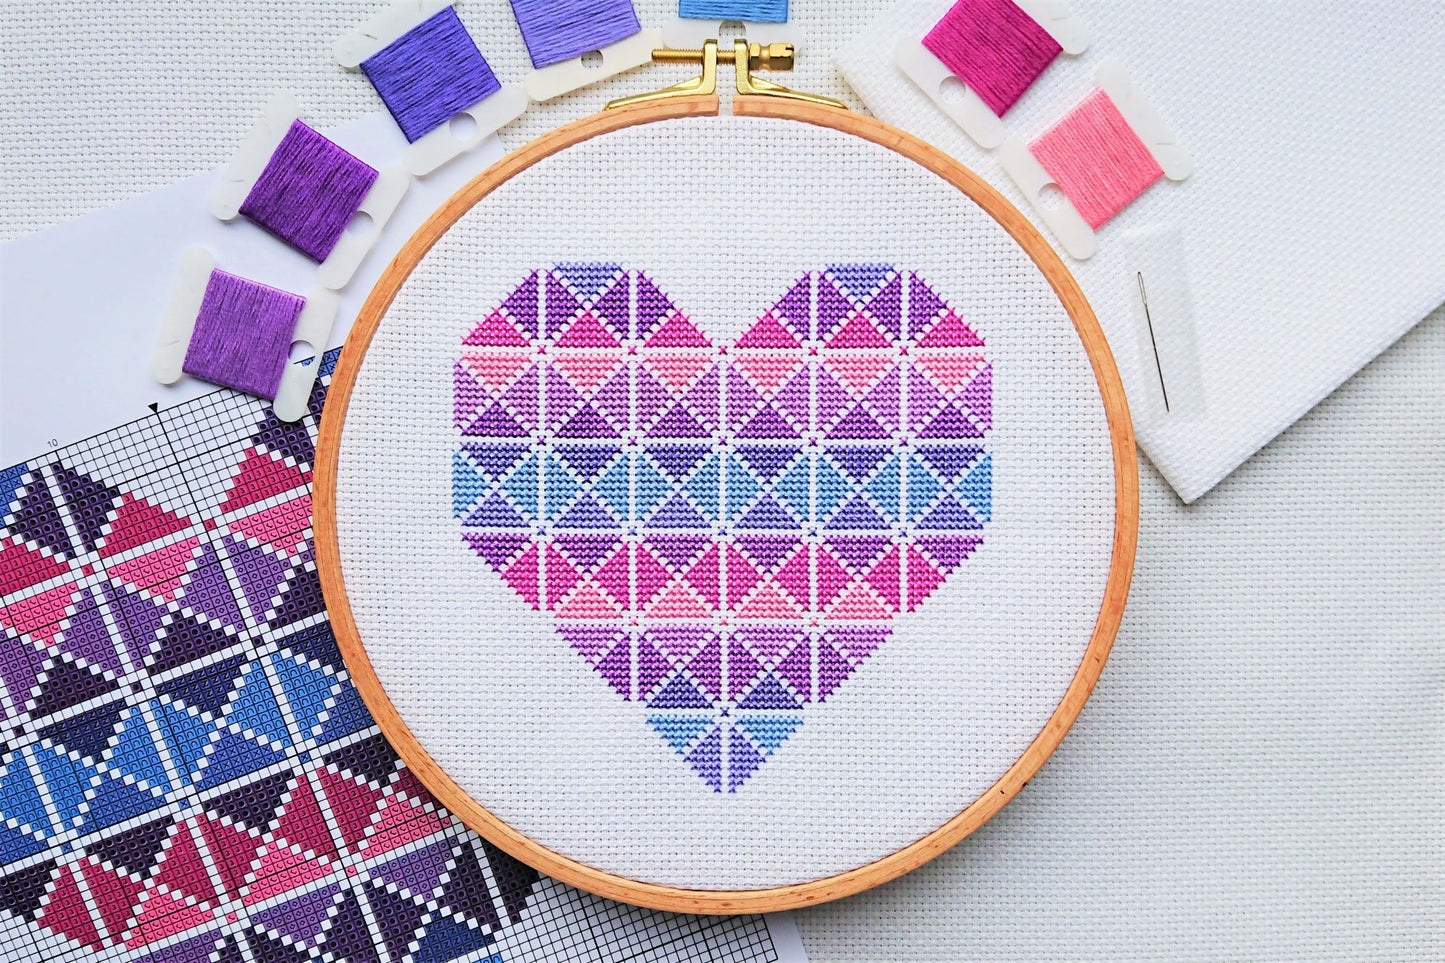 PDF Pattern for Purple Geometric Heart